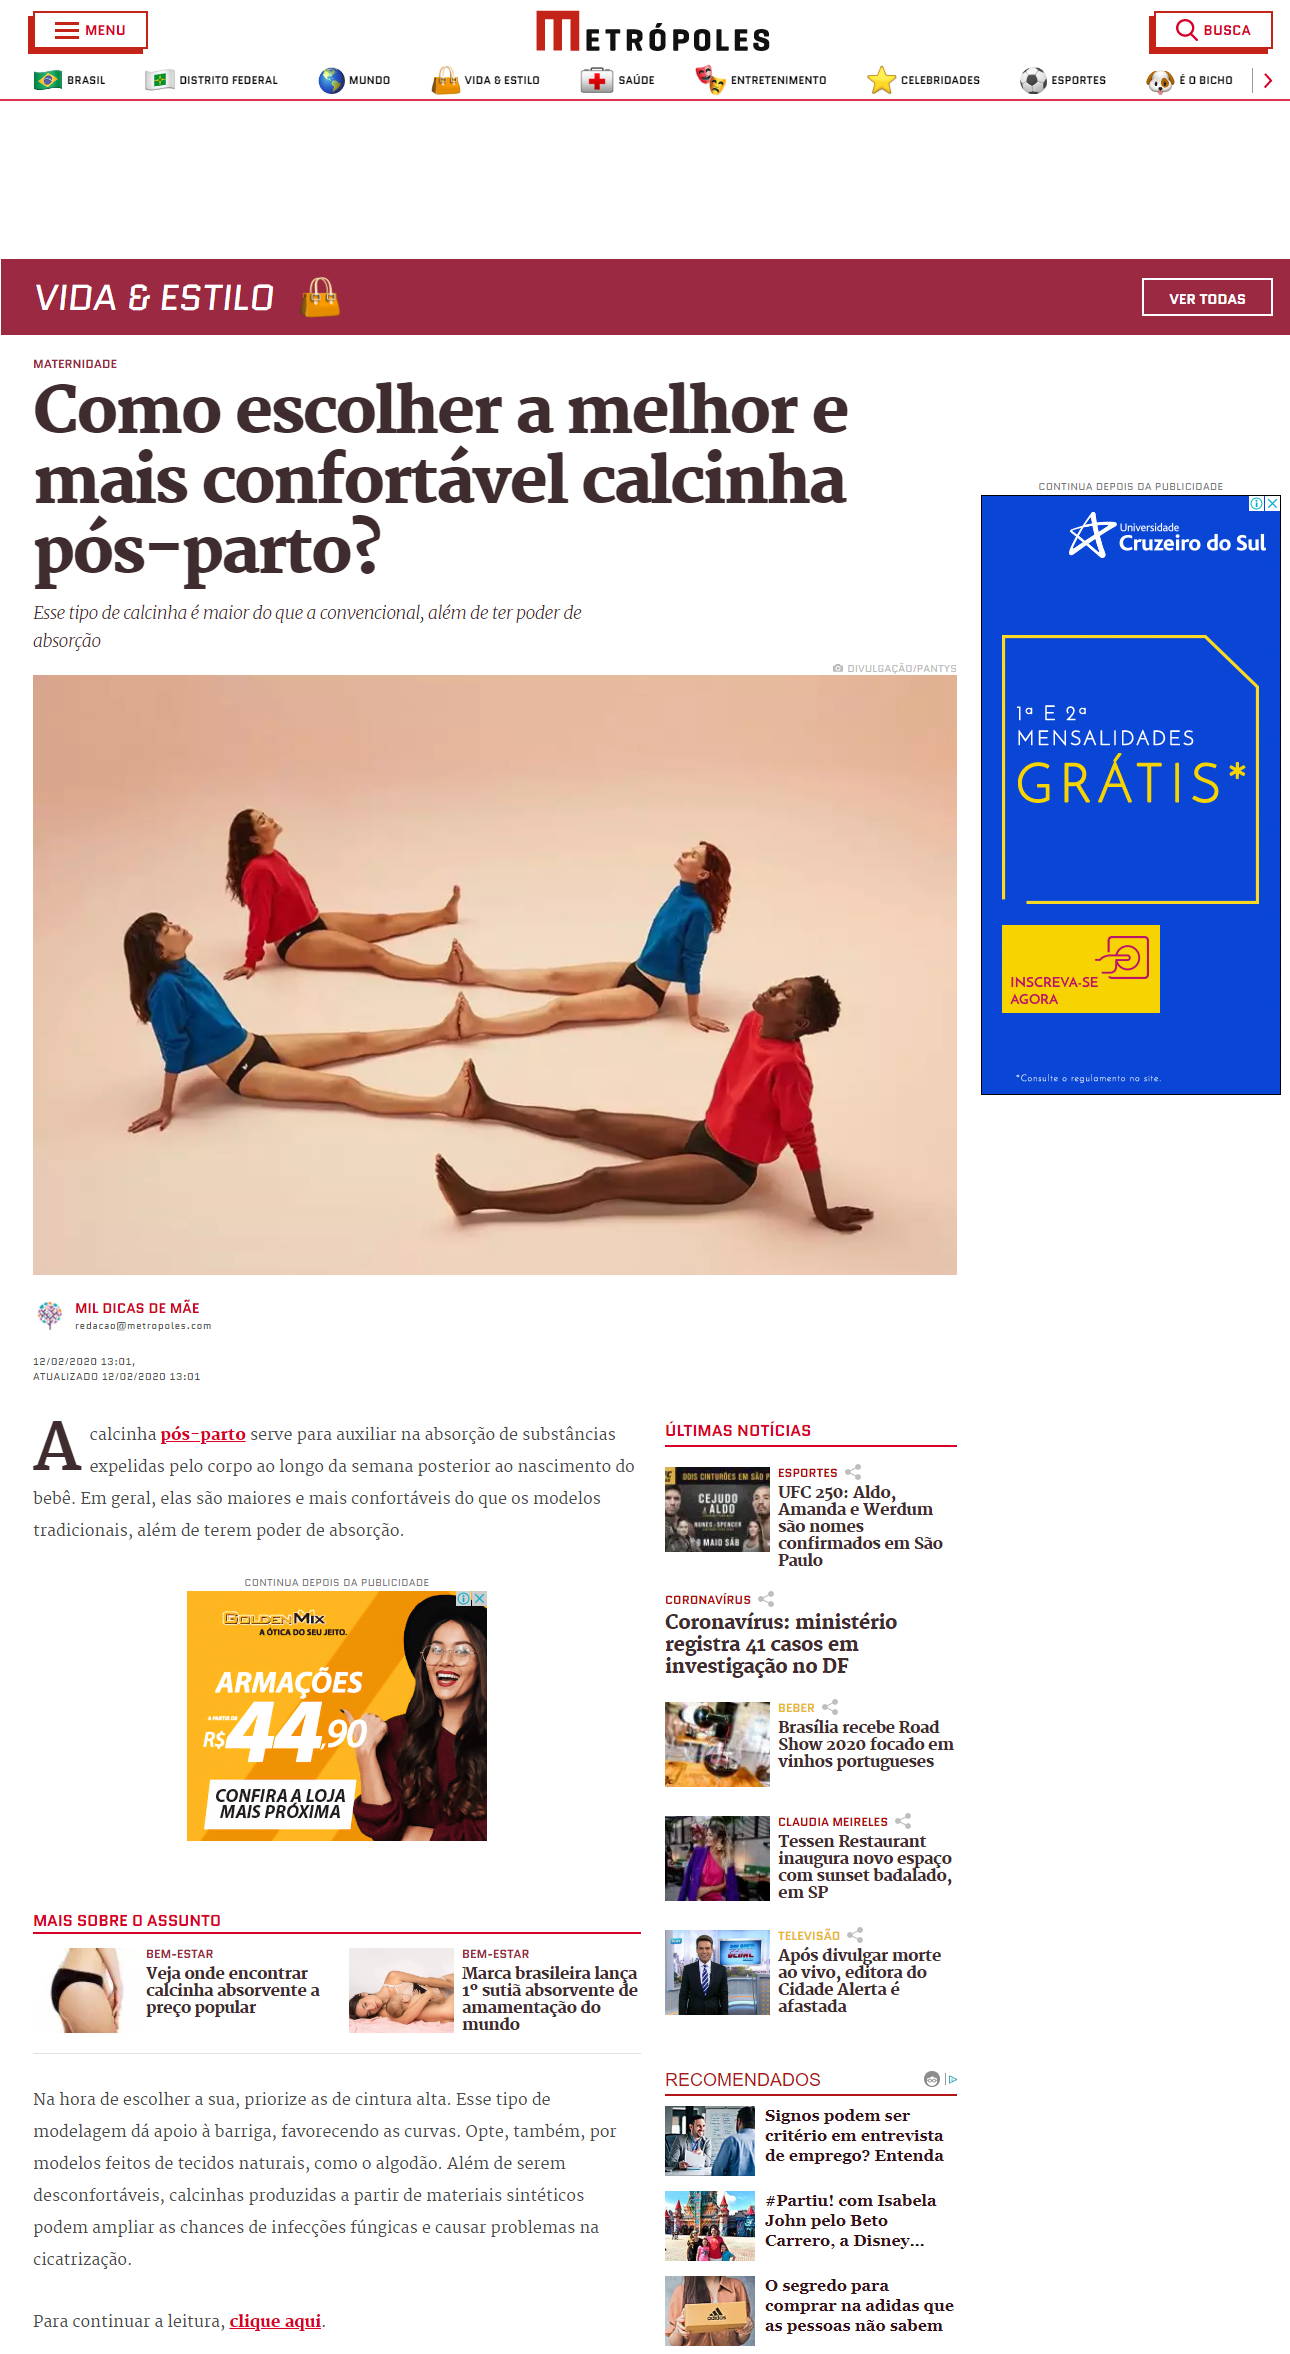 Imagem do site Metrópoles com um texto abordando o seguinte tema: Como escolher a melhor e mais confortável calcinha pós-parto?